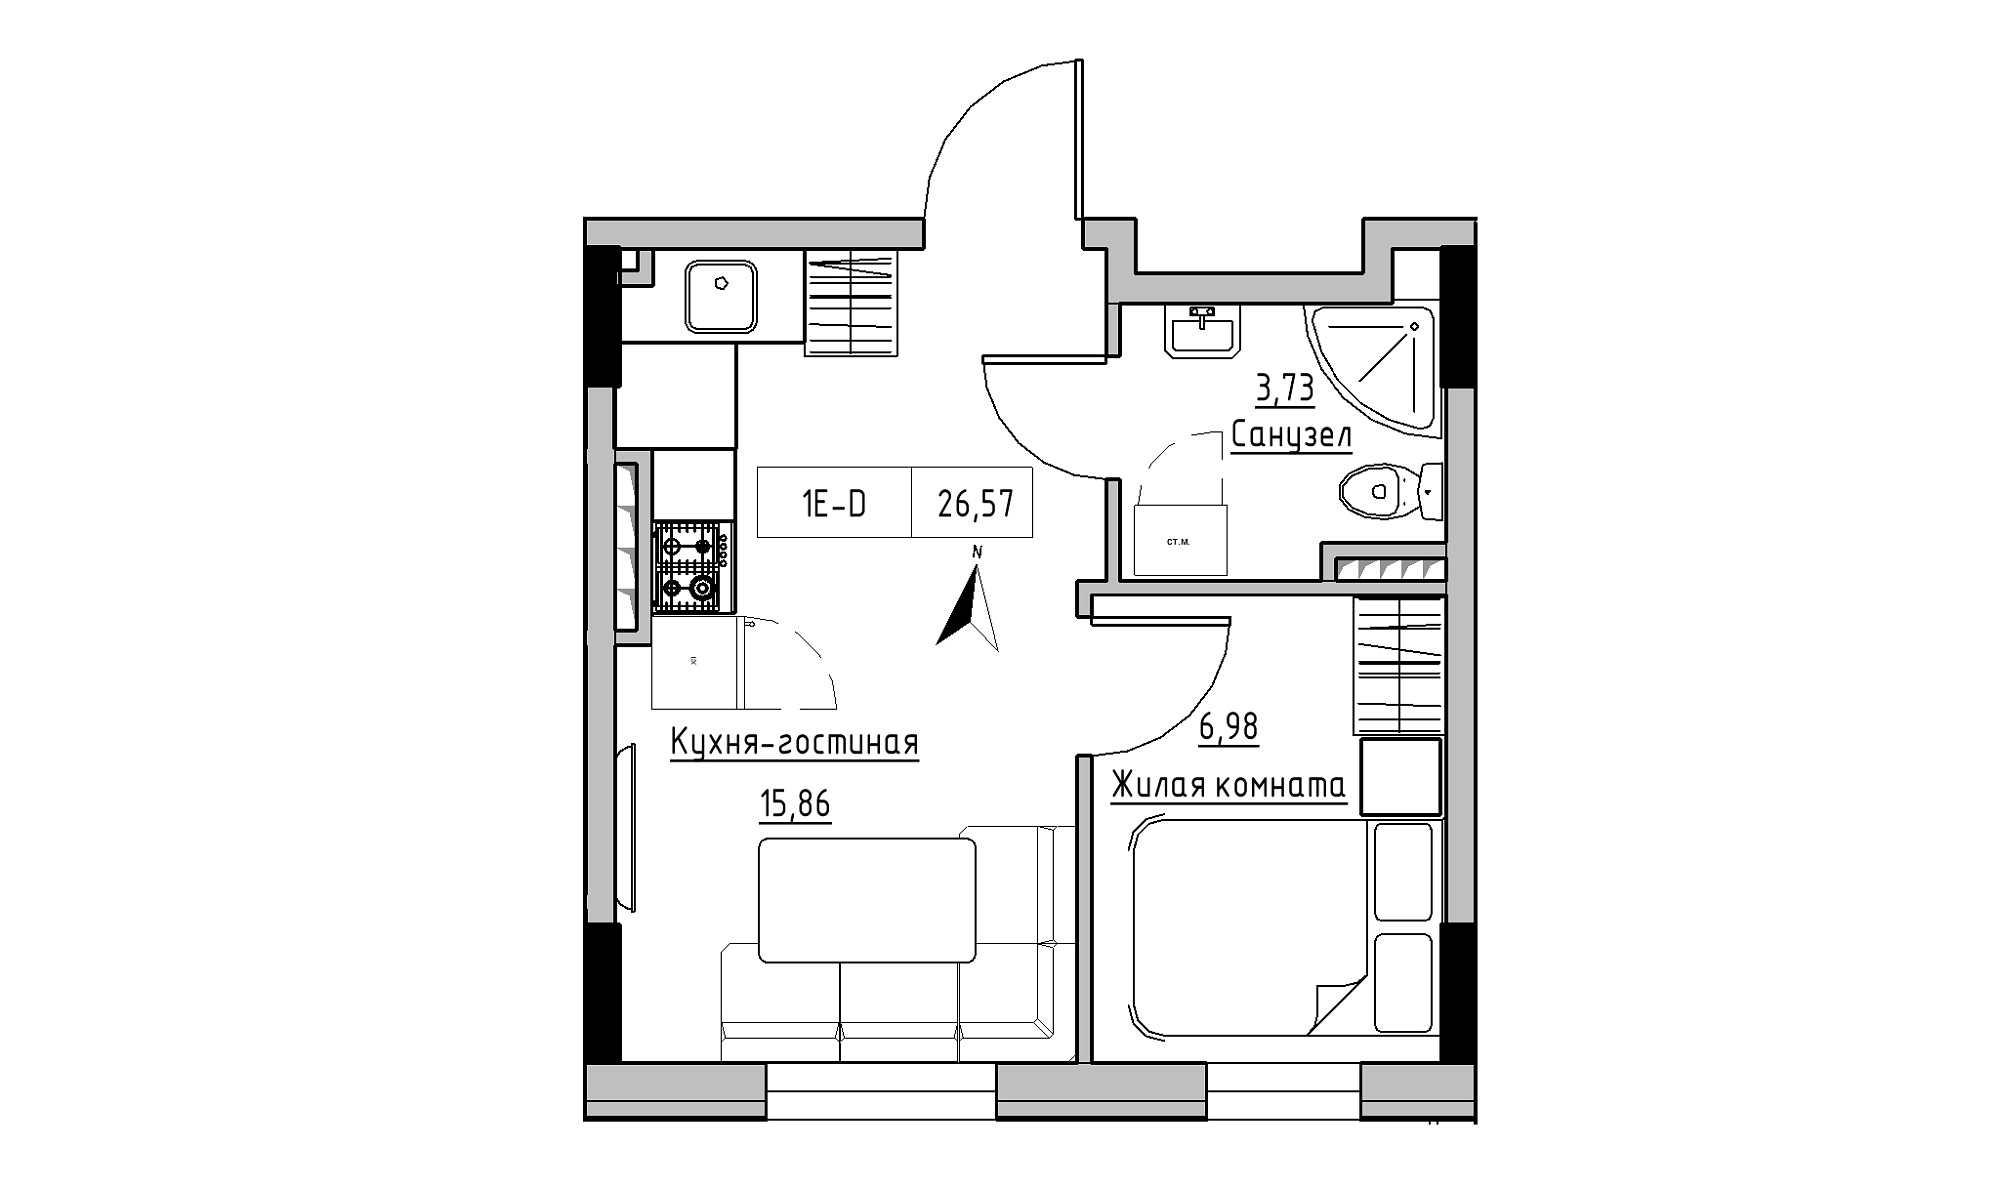 Планування 1-к квартира площею 26.57м2, KS-025-04/0012.